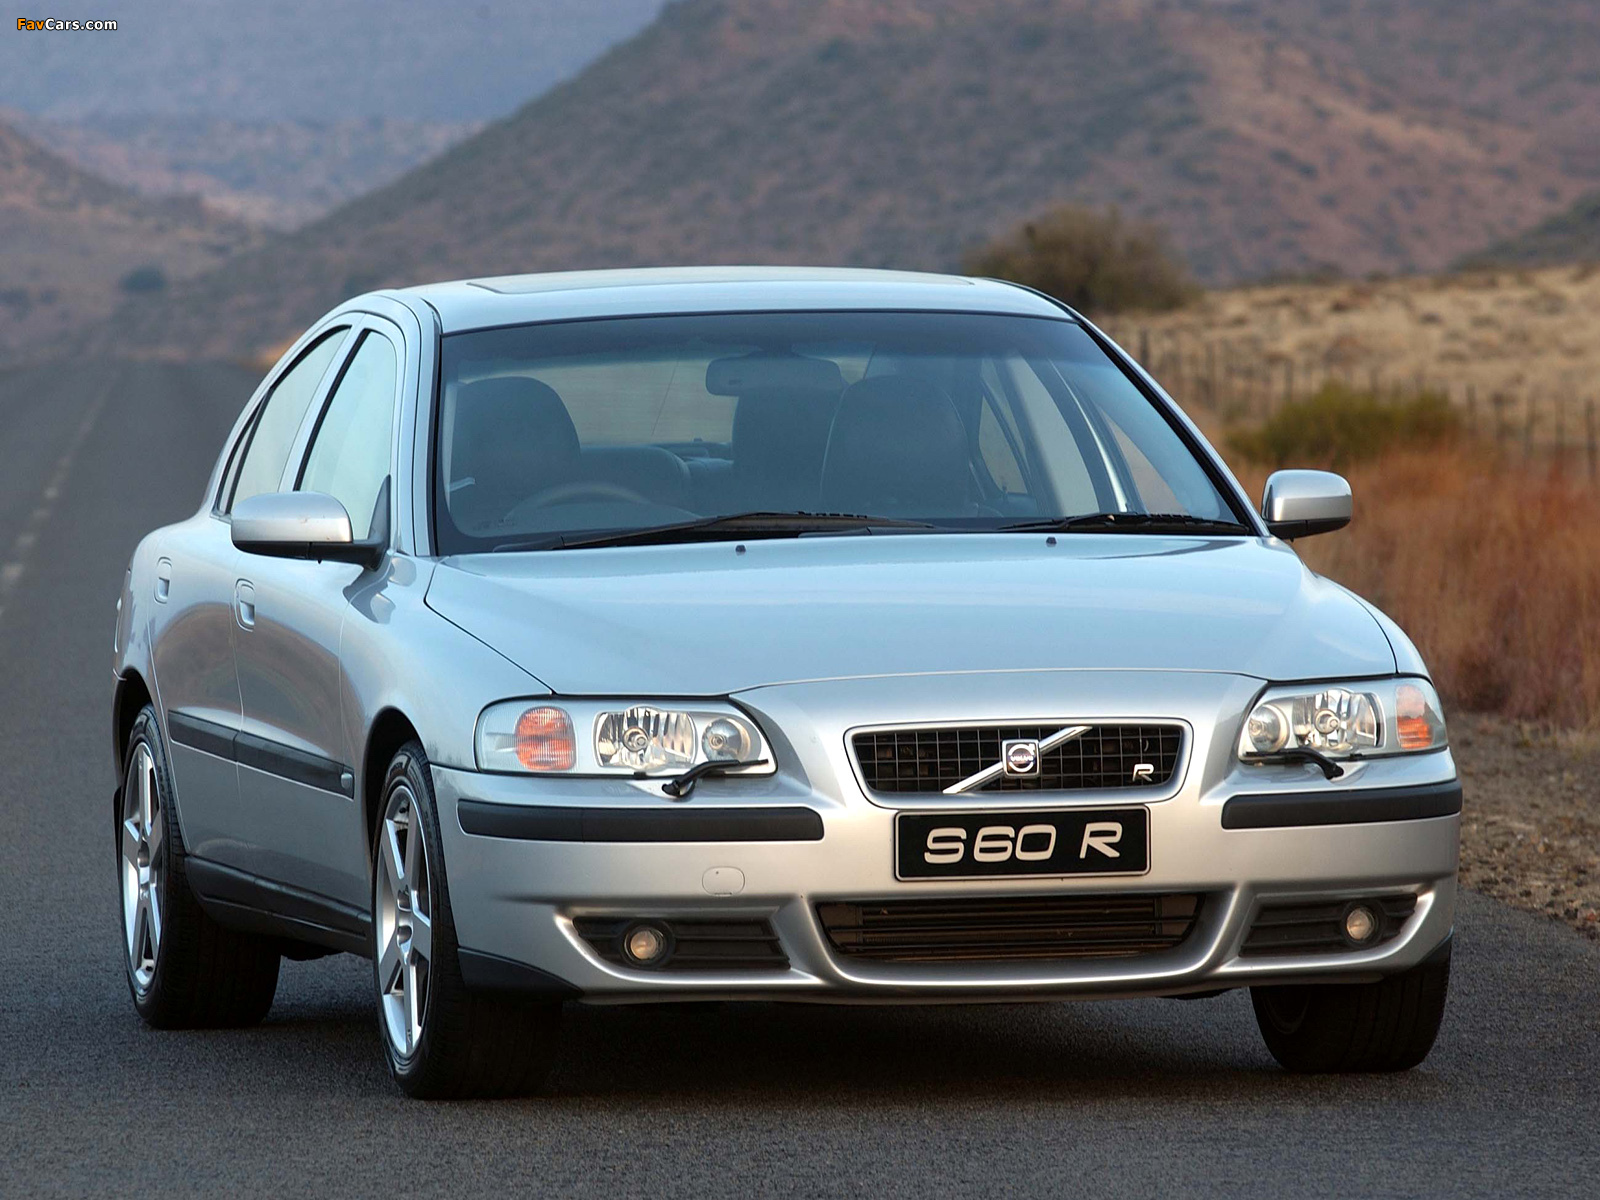 Volvo s60 2004. Volvo s60 r 2004. Volvo s60r. Volvo s60 1999.